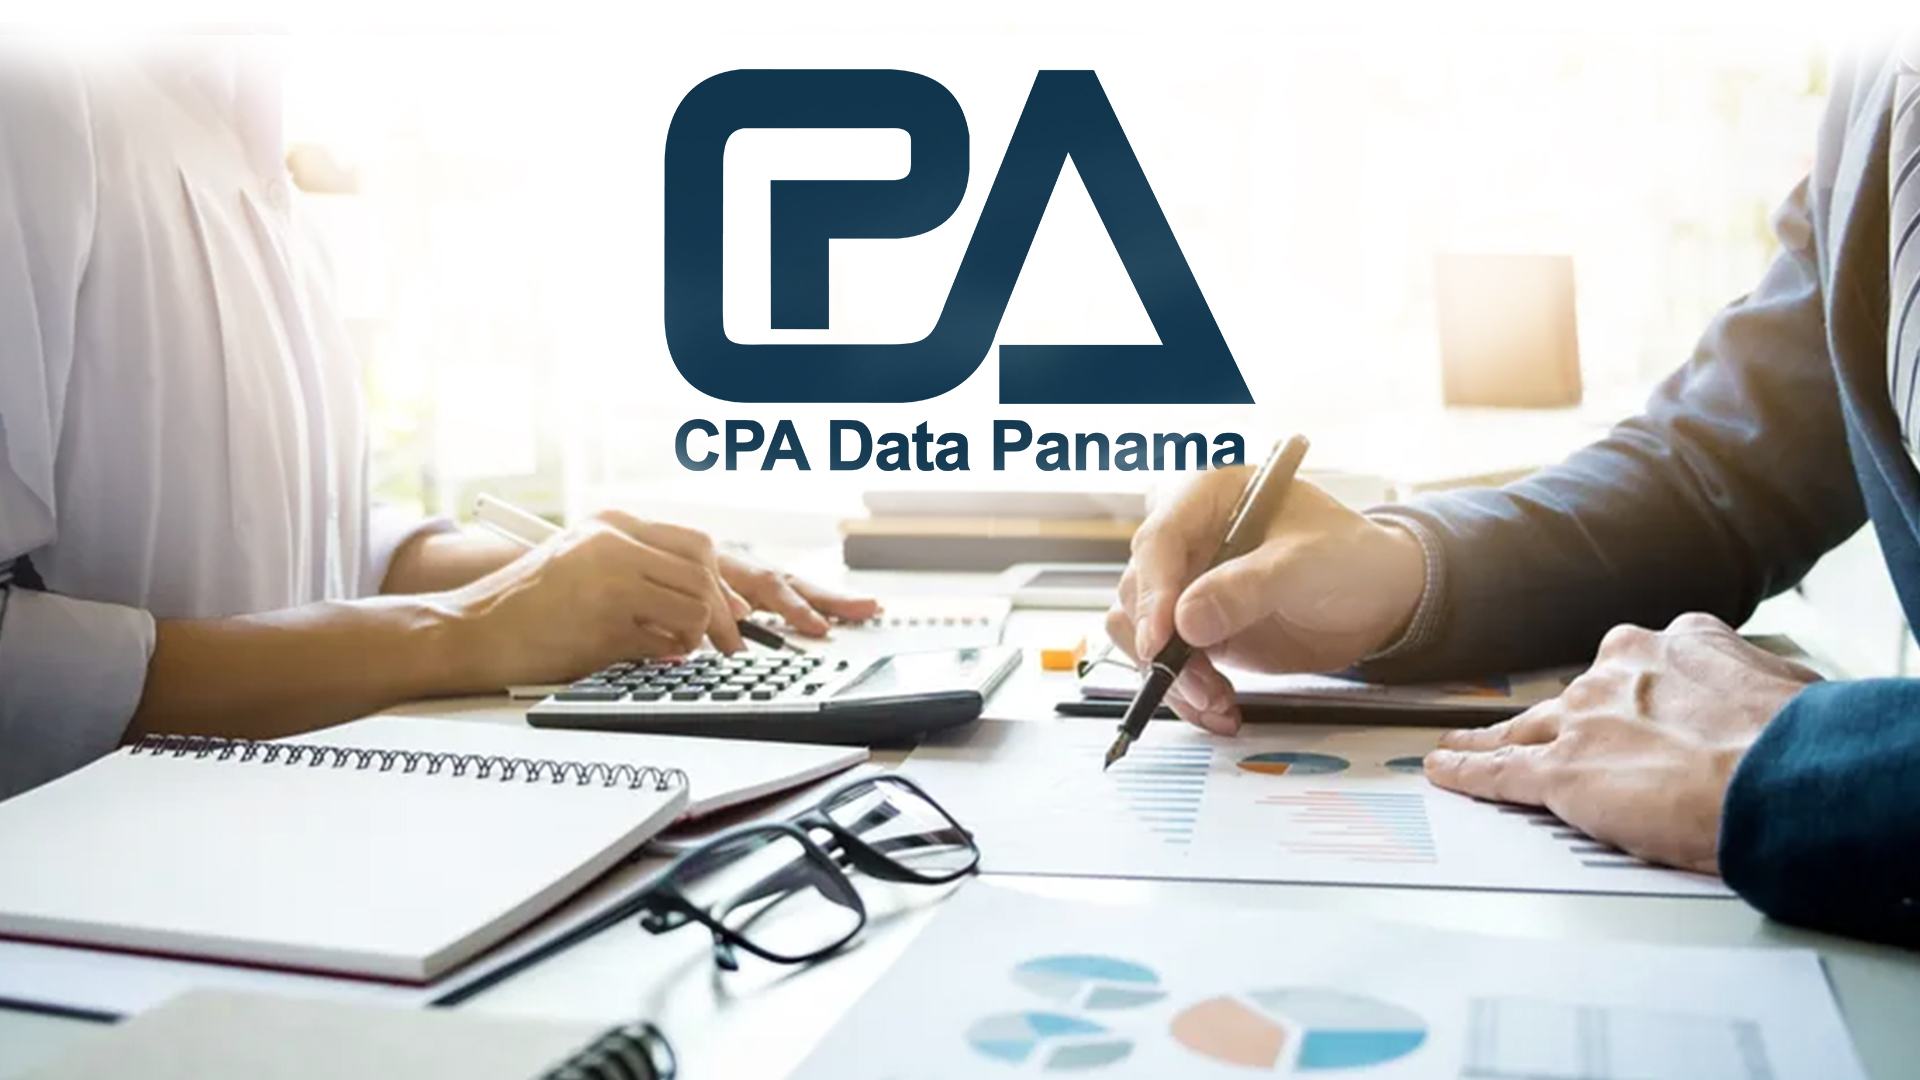 Le società offshore di Panama cercano il software di contabilitá per i libri contabili